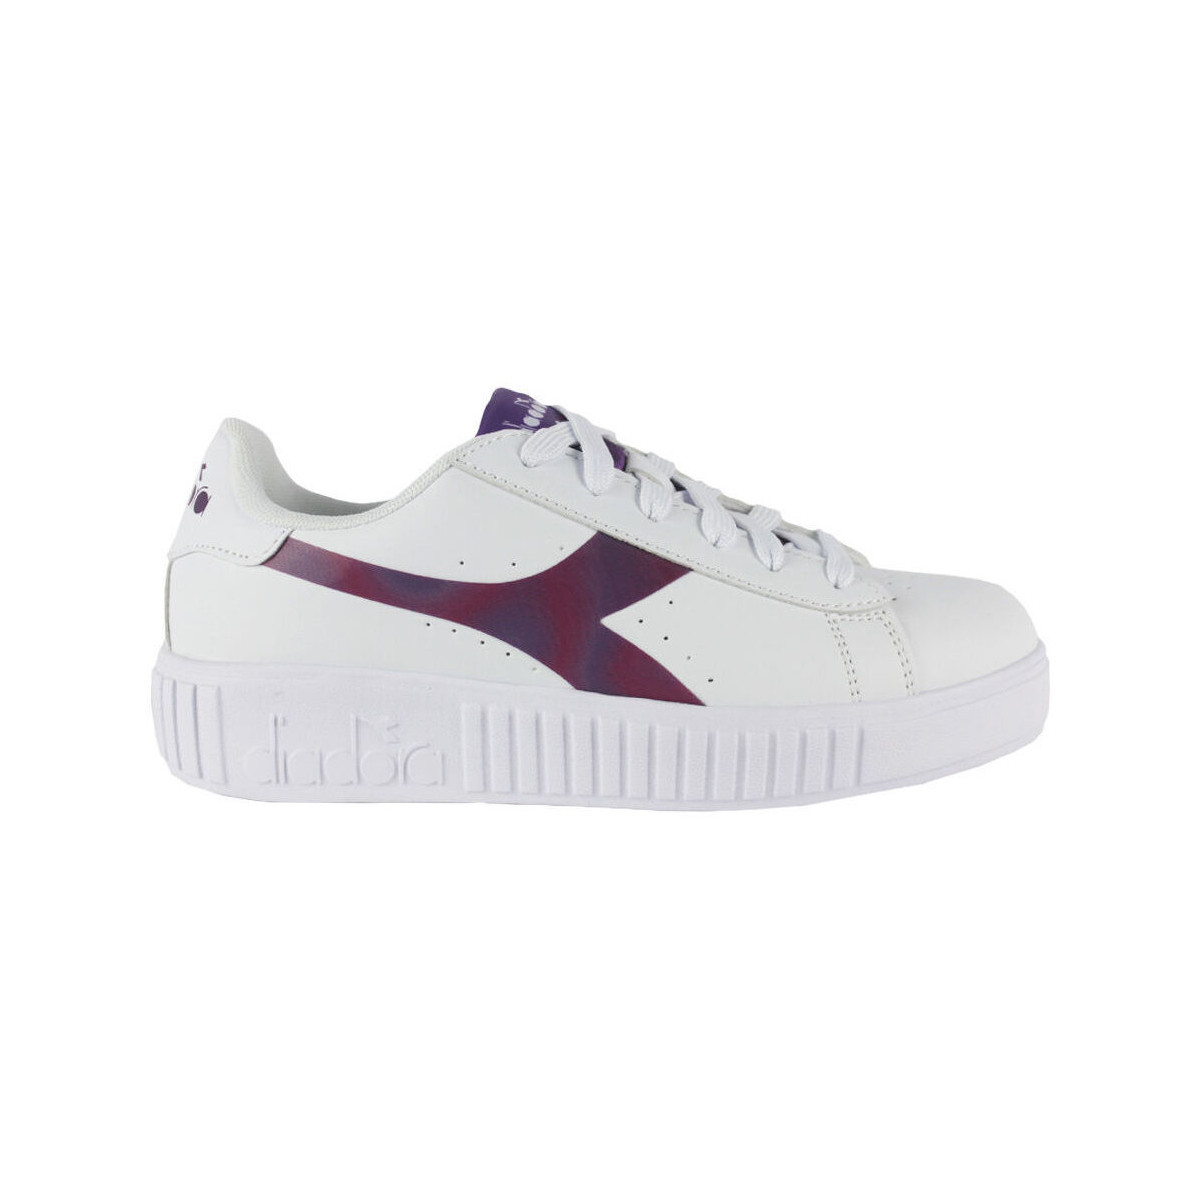 Παπούτσια Παιδί Sneakers Diadora GAME STEP C7821 White/Dahlia mauve Άσπρο